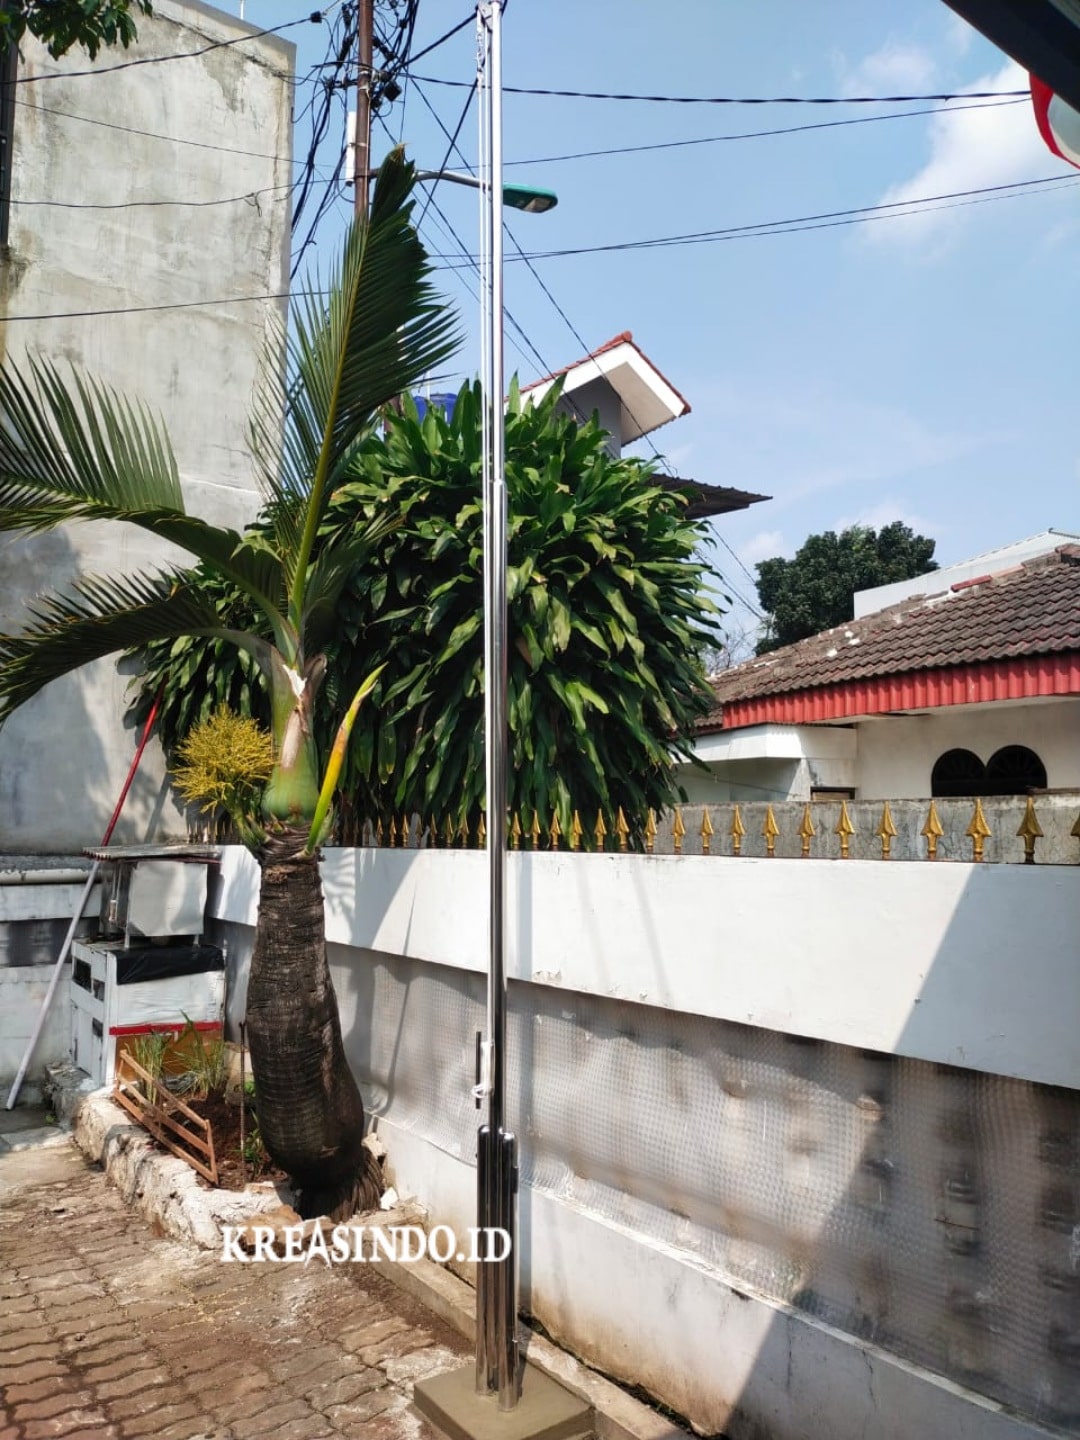 Pemasanga Tiang Bendera Stainless Pesanan Bpk. Faisal di Jakarta Timur Terpasang Dengan Baik